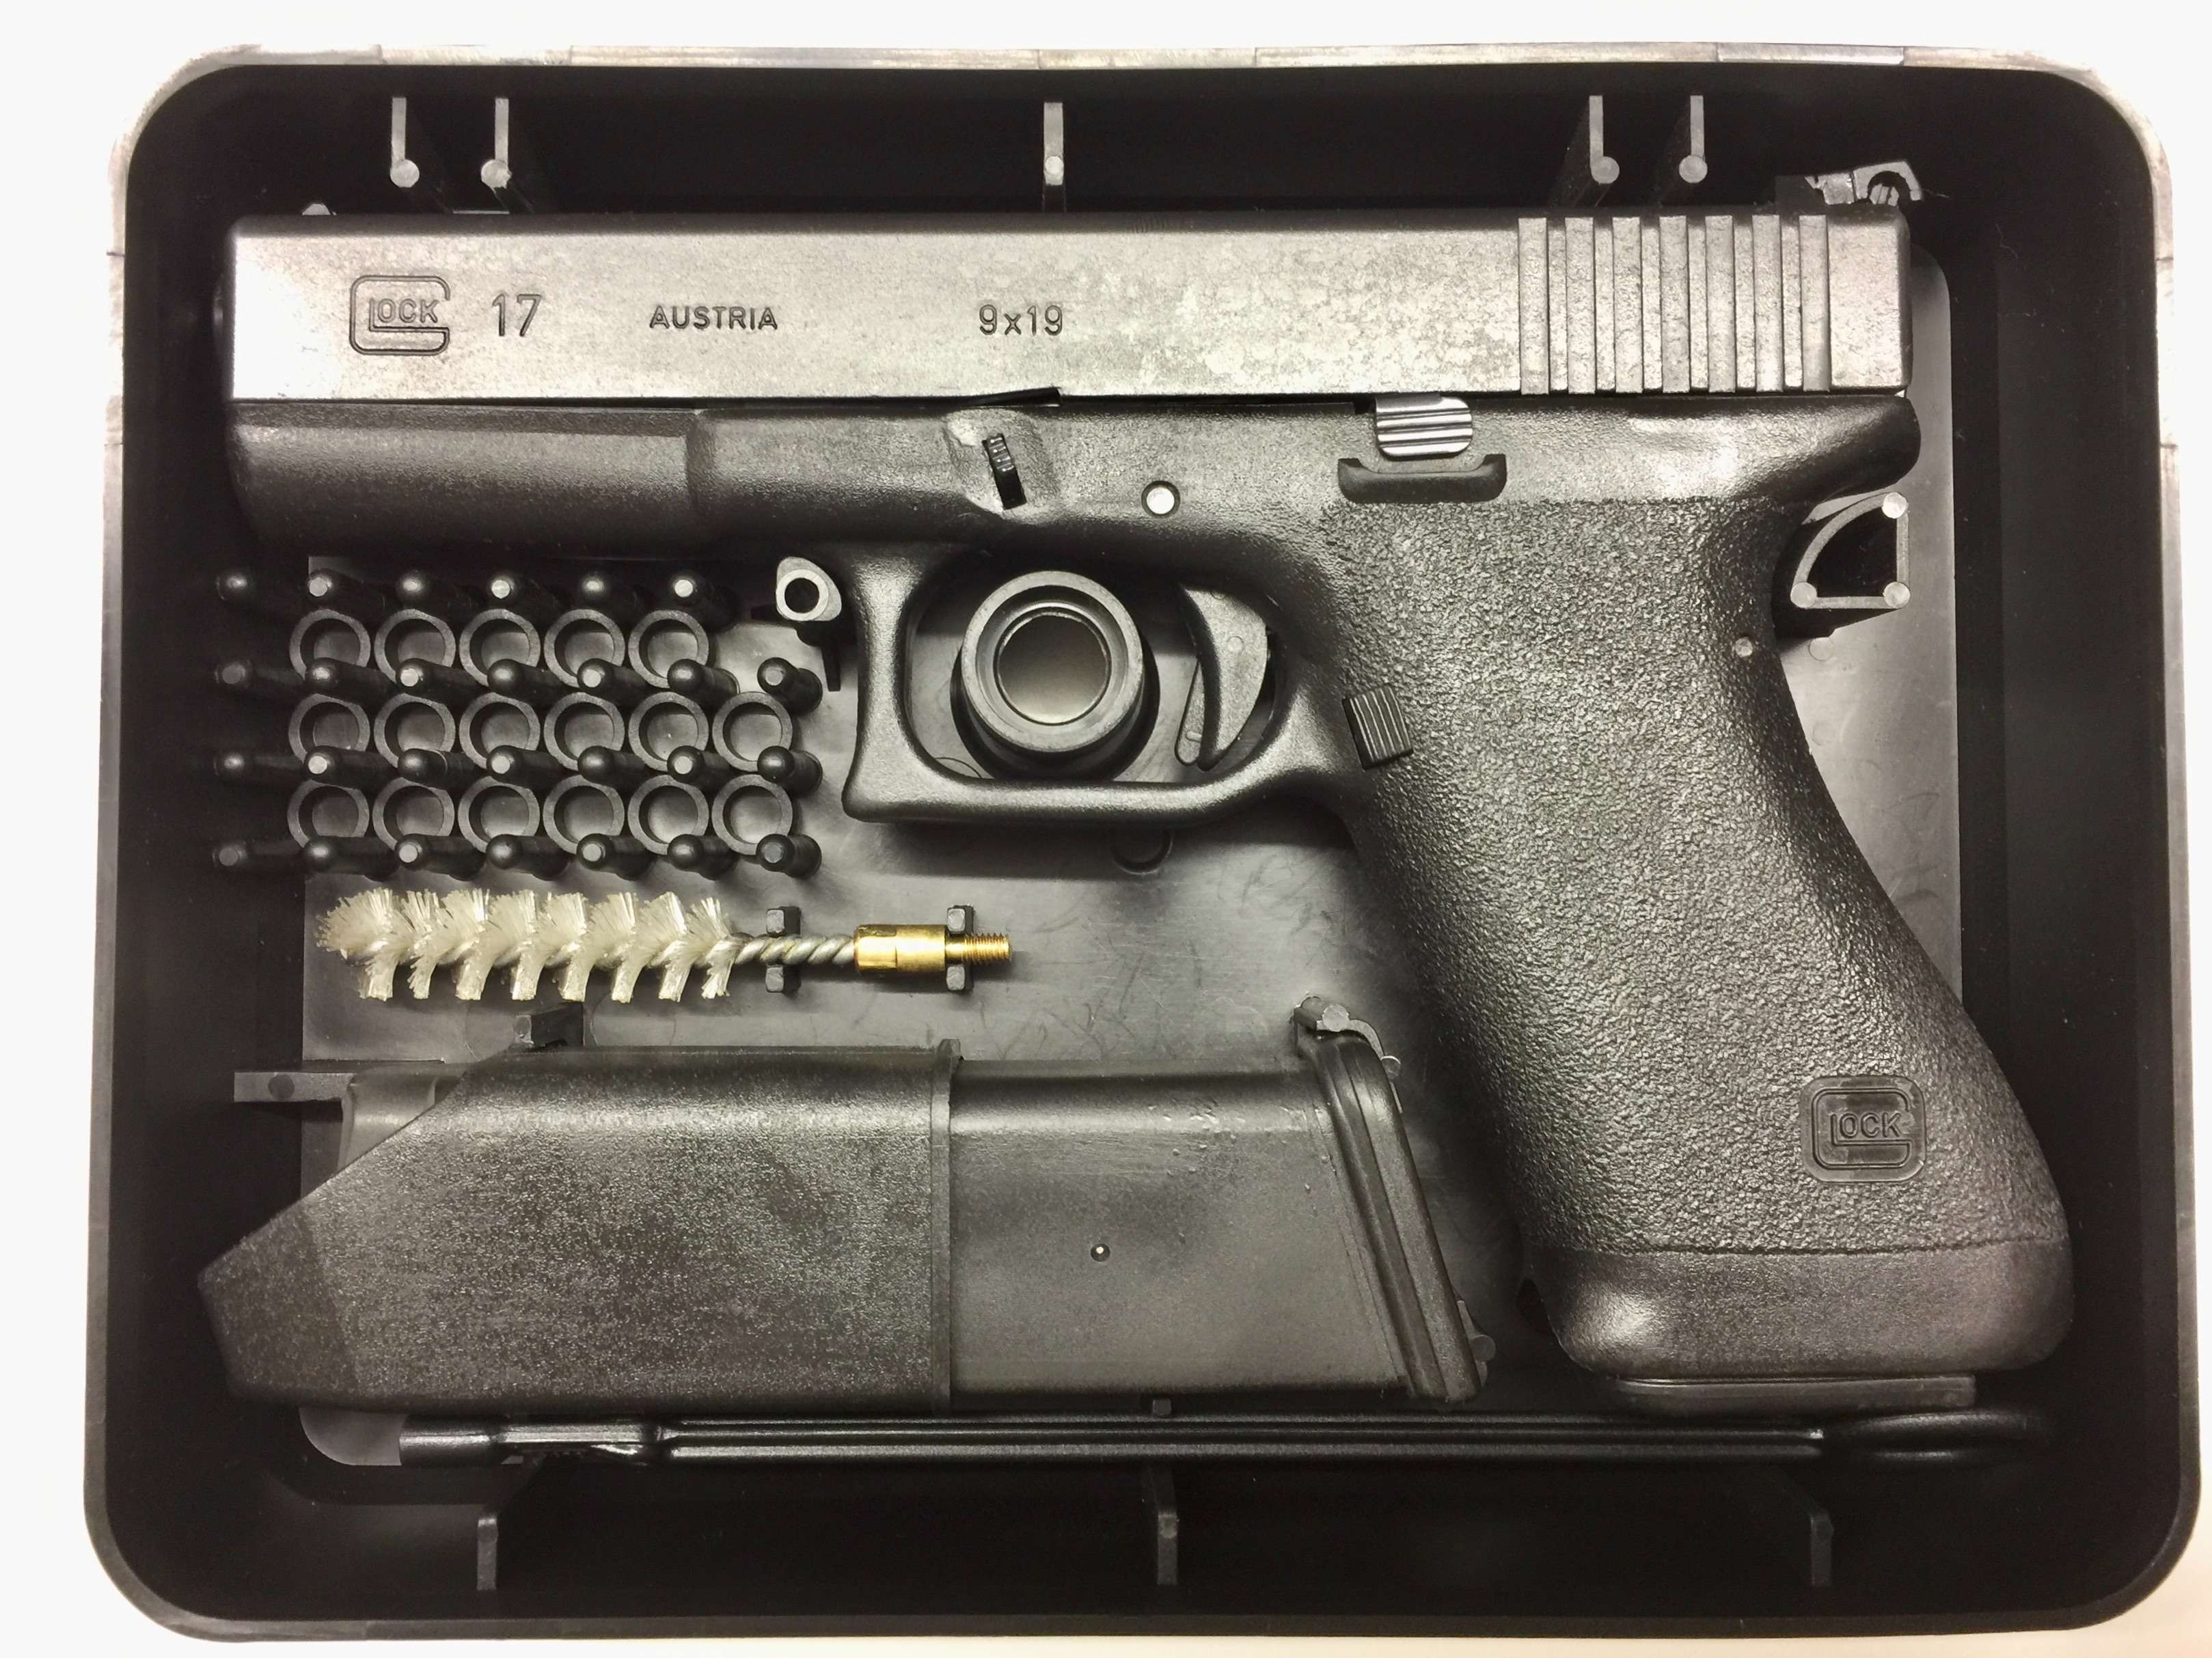 Pistol Glock 17 Austria senjata semi otomatis yang dipakai untuk standar militer. (Foto: dok. kaskus.co.id)